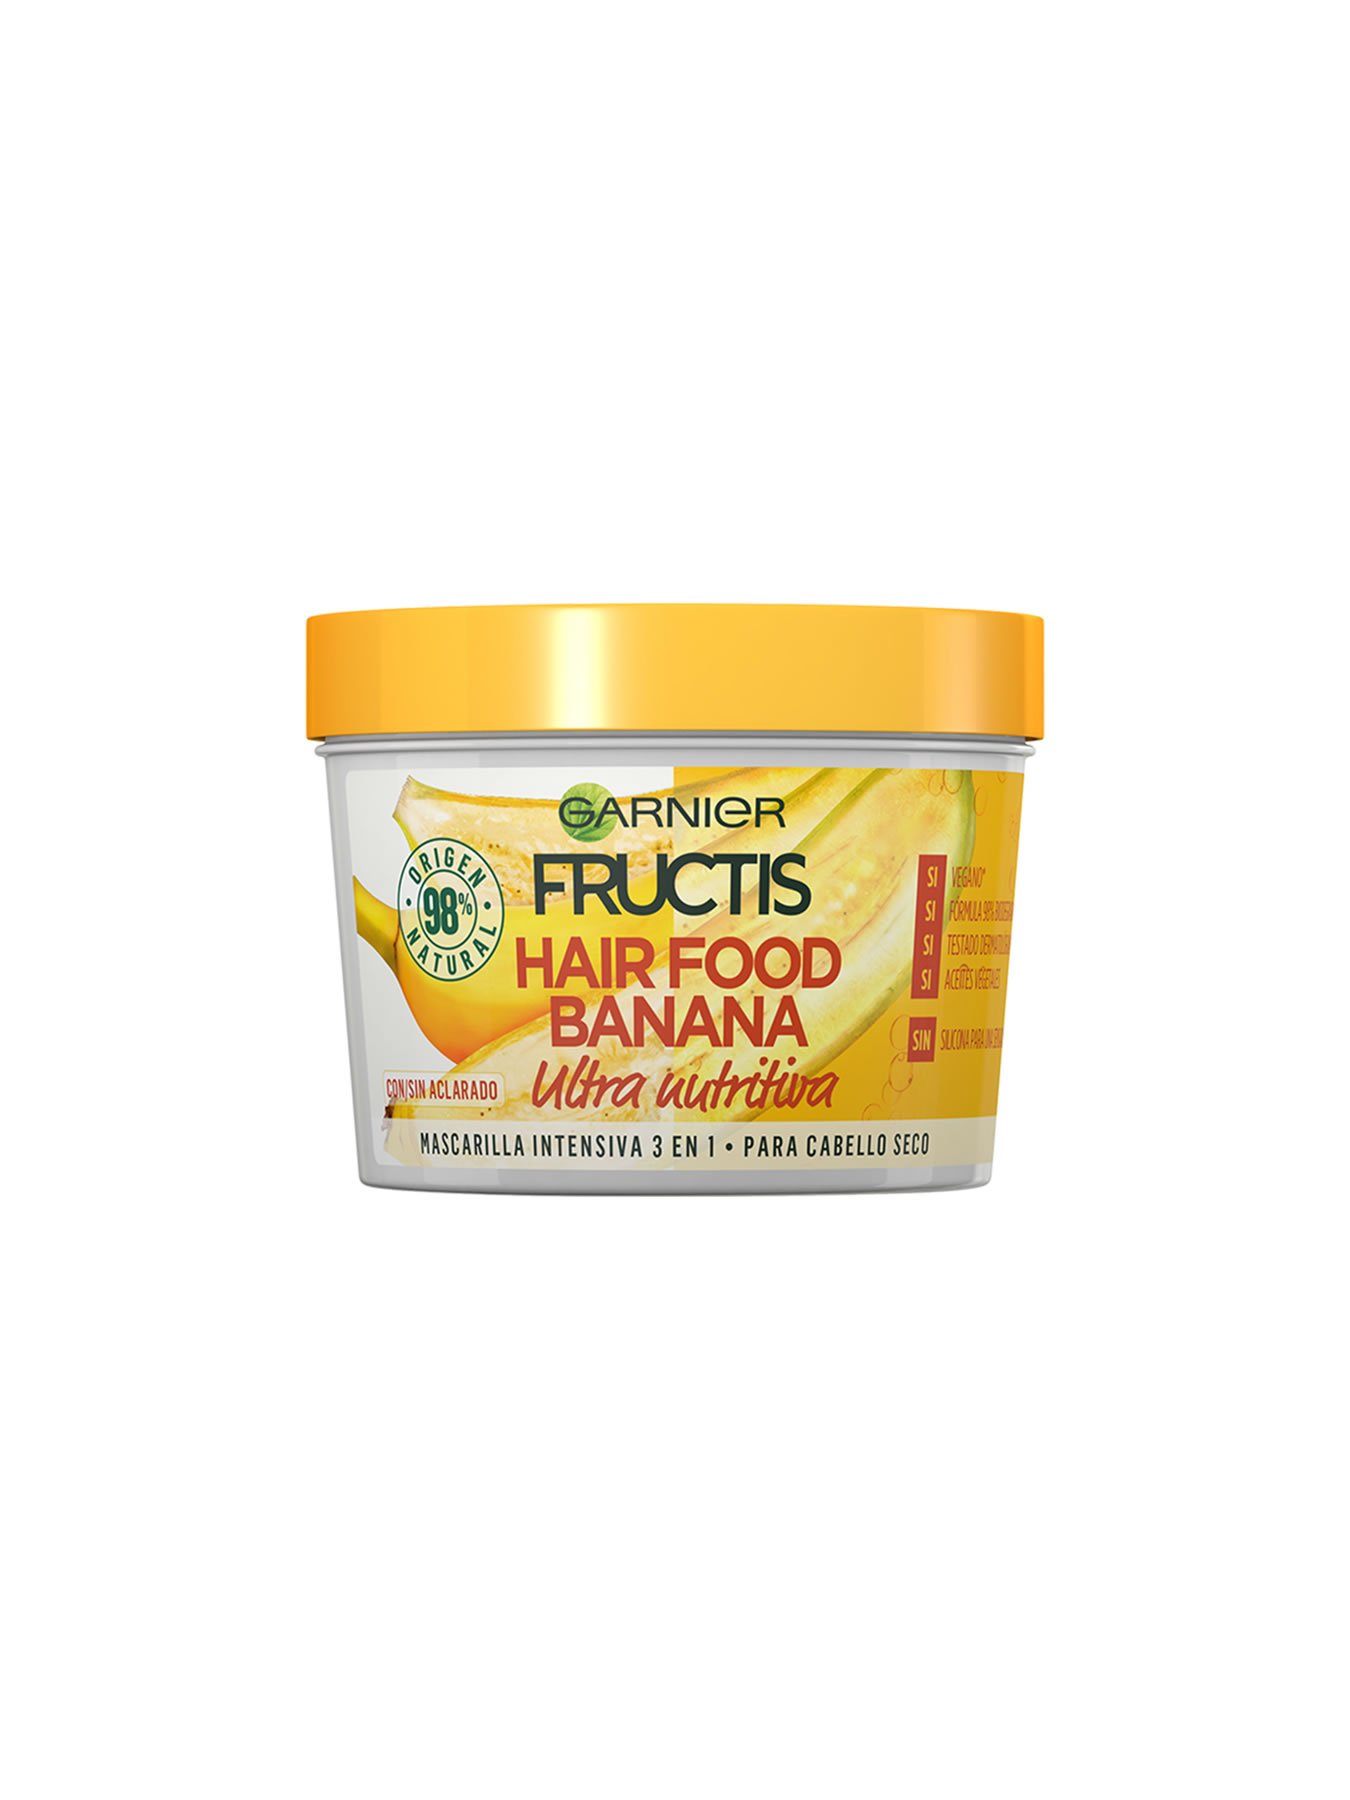 Hair Food Banana: Mascarilla de plátano para el pelo 3 1 | Garnier